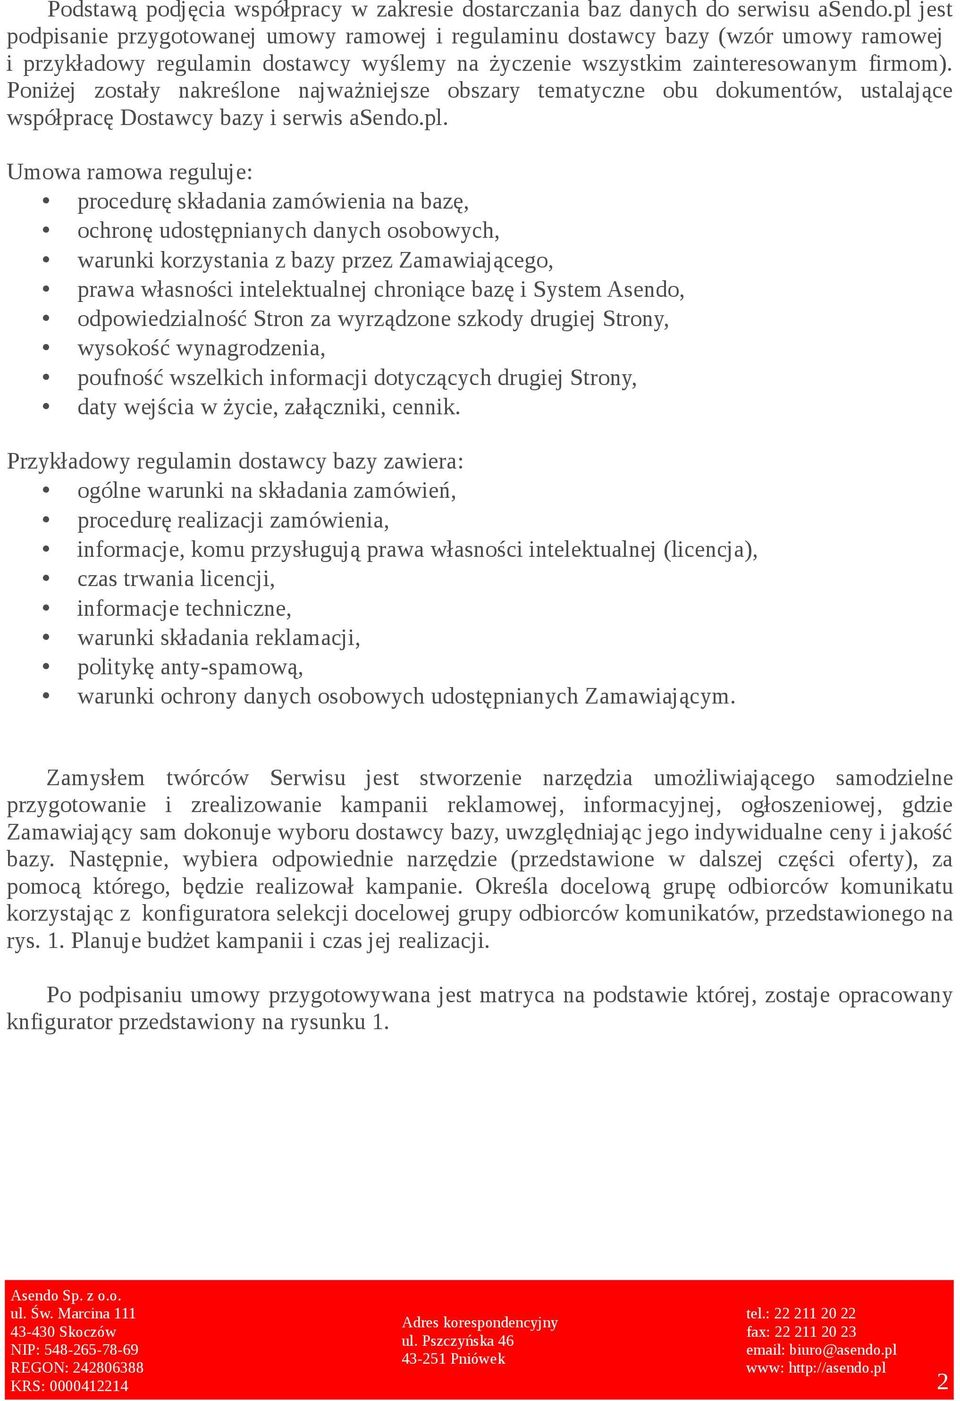 Poniżej zostały nakreślone najważniejsze obszary tematyczne obu dokumentów, ustalające współpracę Dostawcy bazy i serwis asendo.pl.